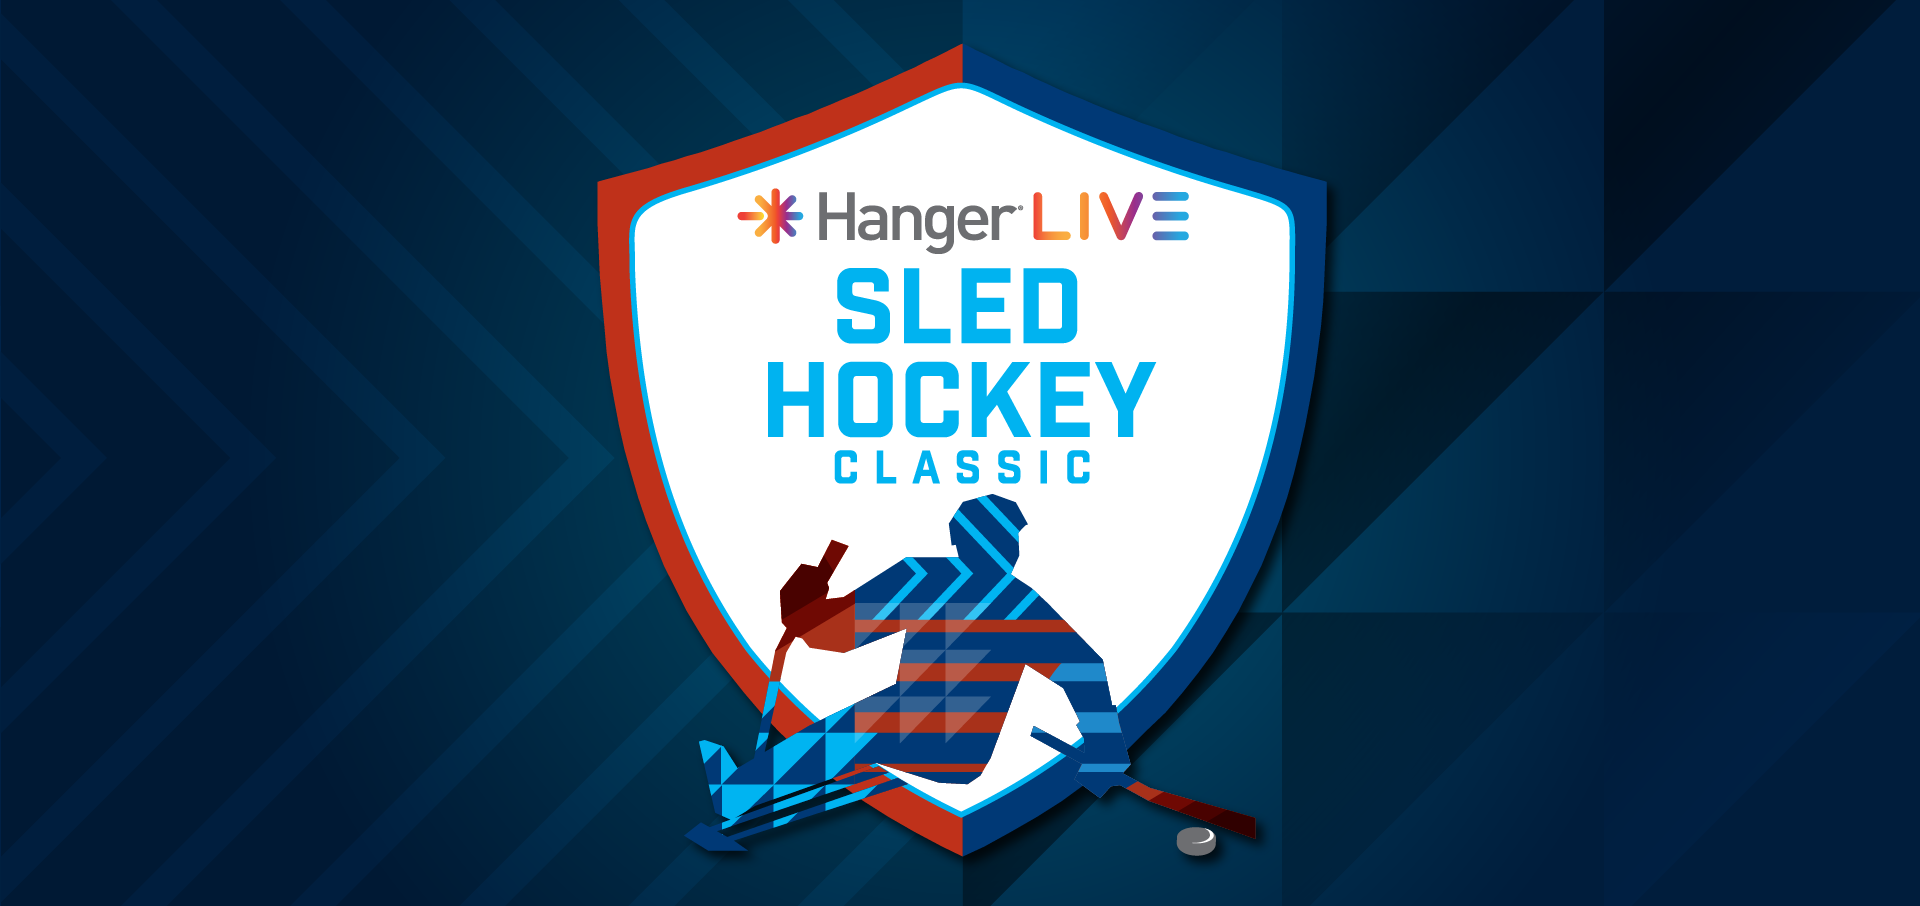 Hanger LIVE Sled Hockey Classic Hanger Clinic